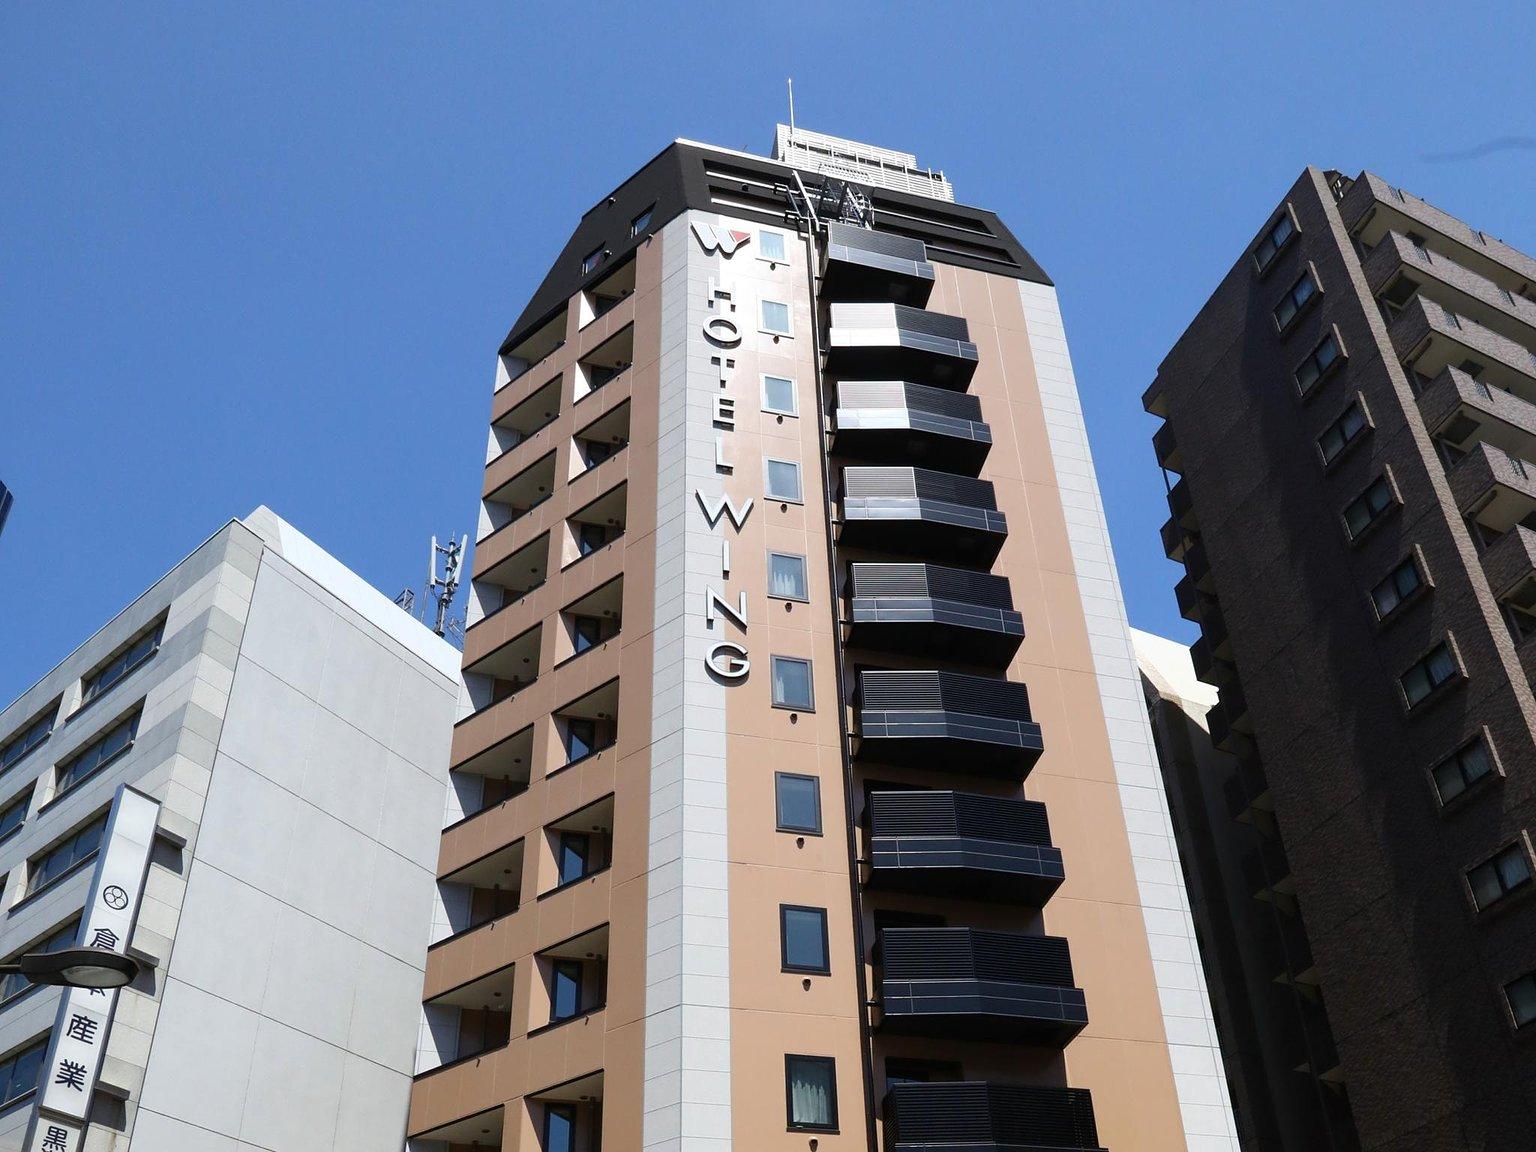 호텔 윙 인터내셔널 셀렉트 이케부쿠로 / Hotel Wing International Select Ikebukuro